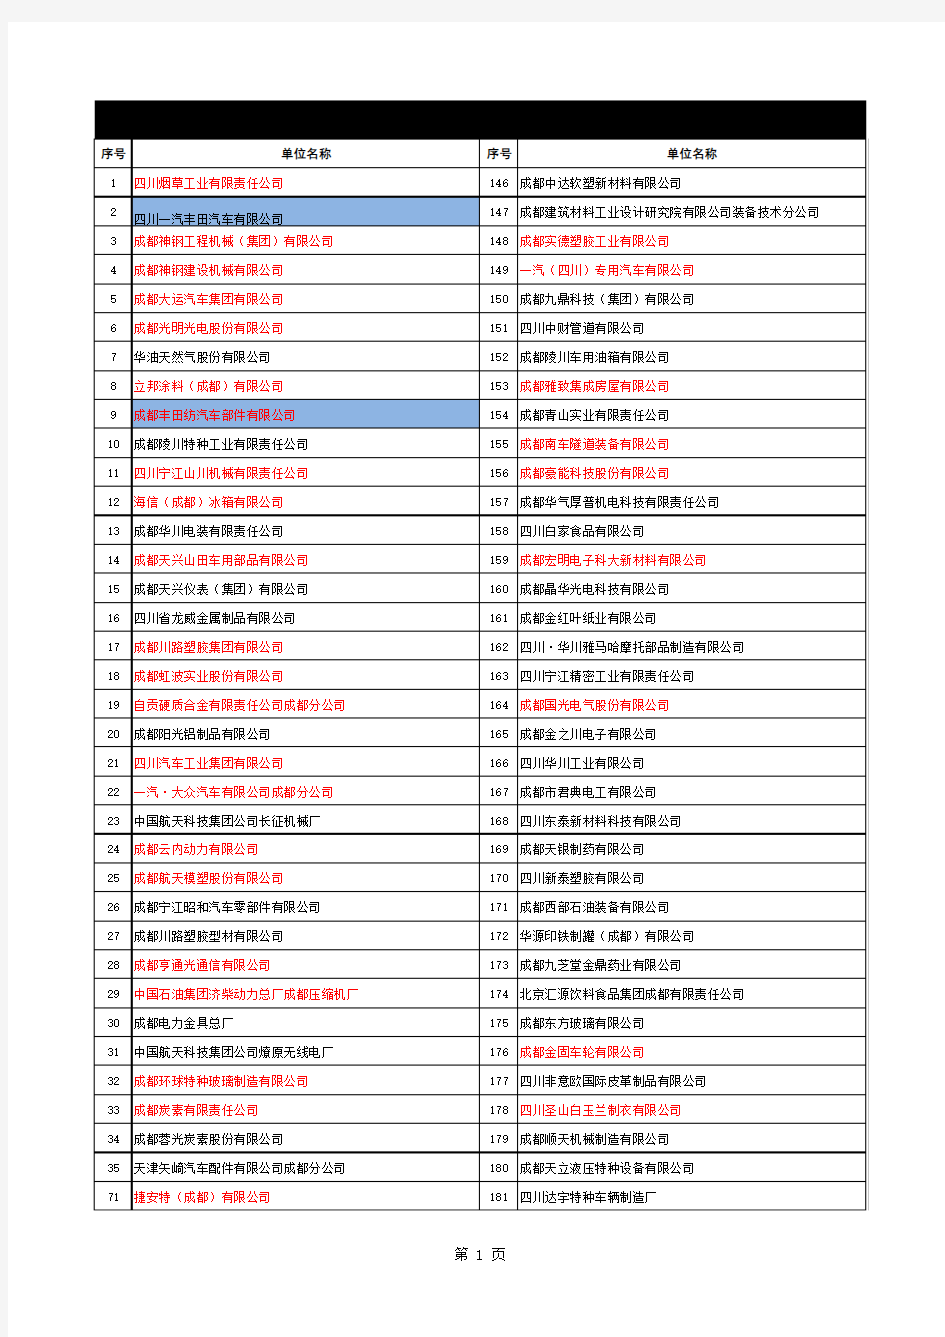 最新成都市龙泉驿区全部企业名单